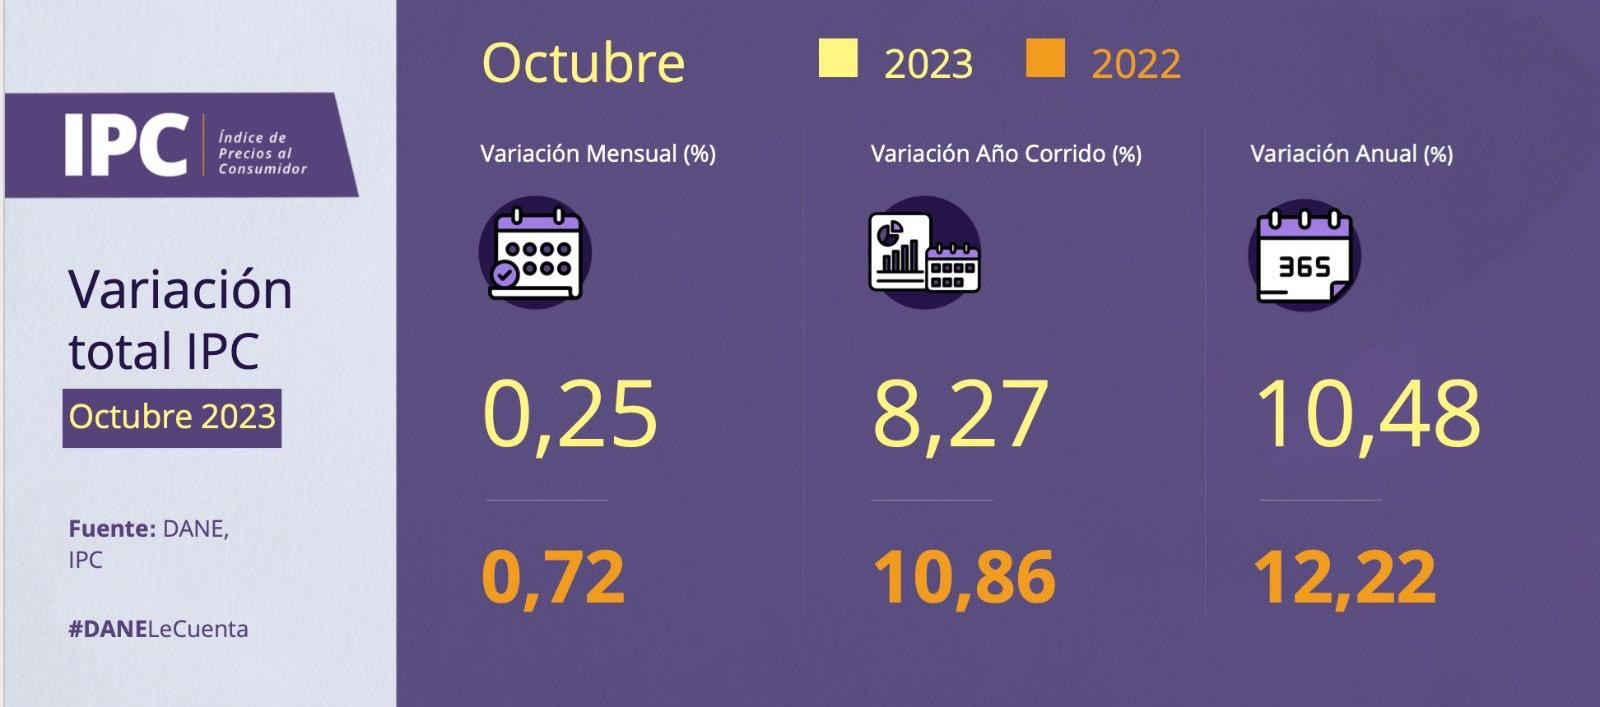 Comparativo de inflación de octubre de 2022 frente a la de 2023